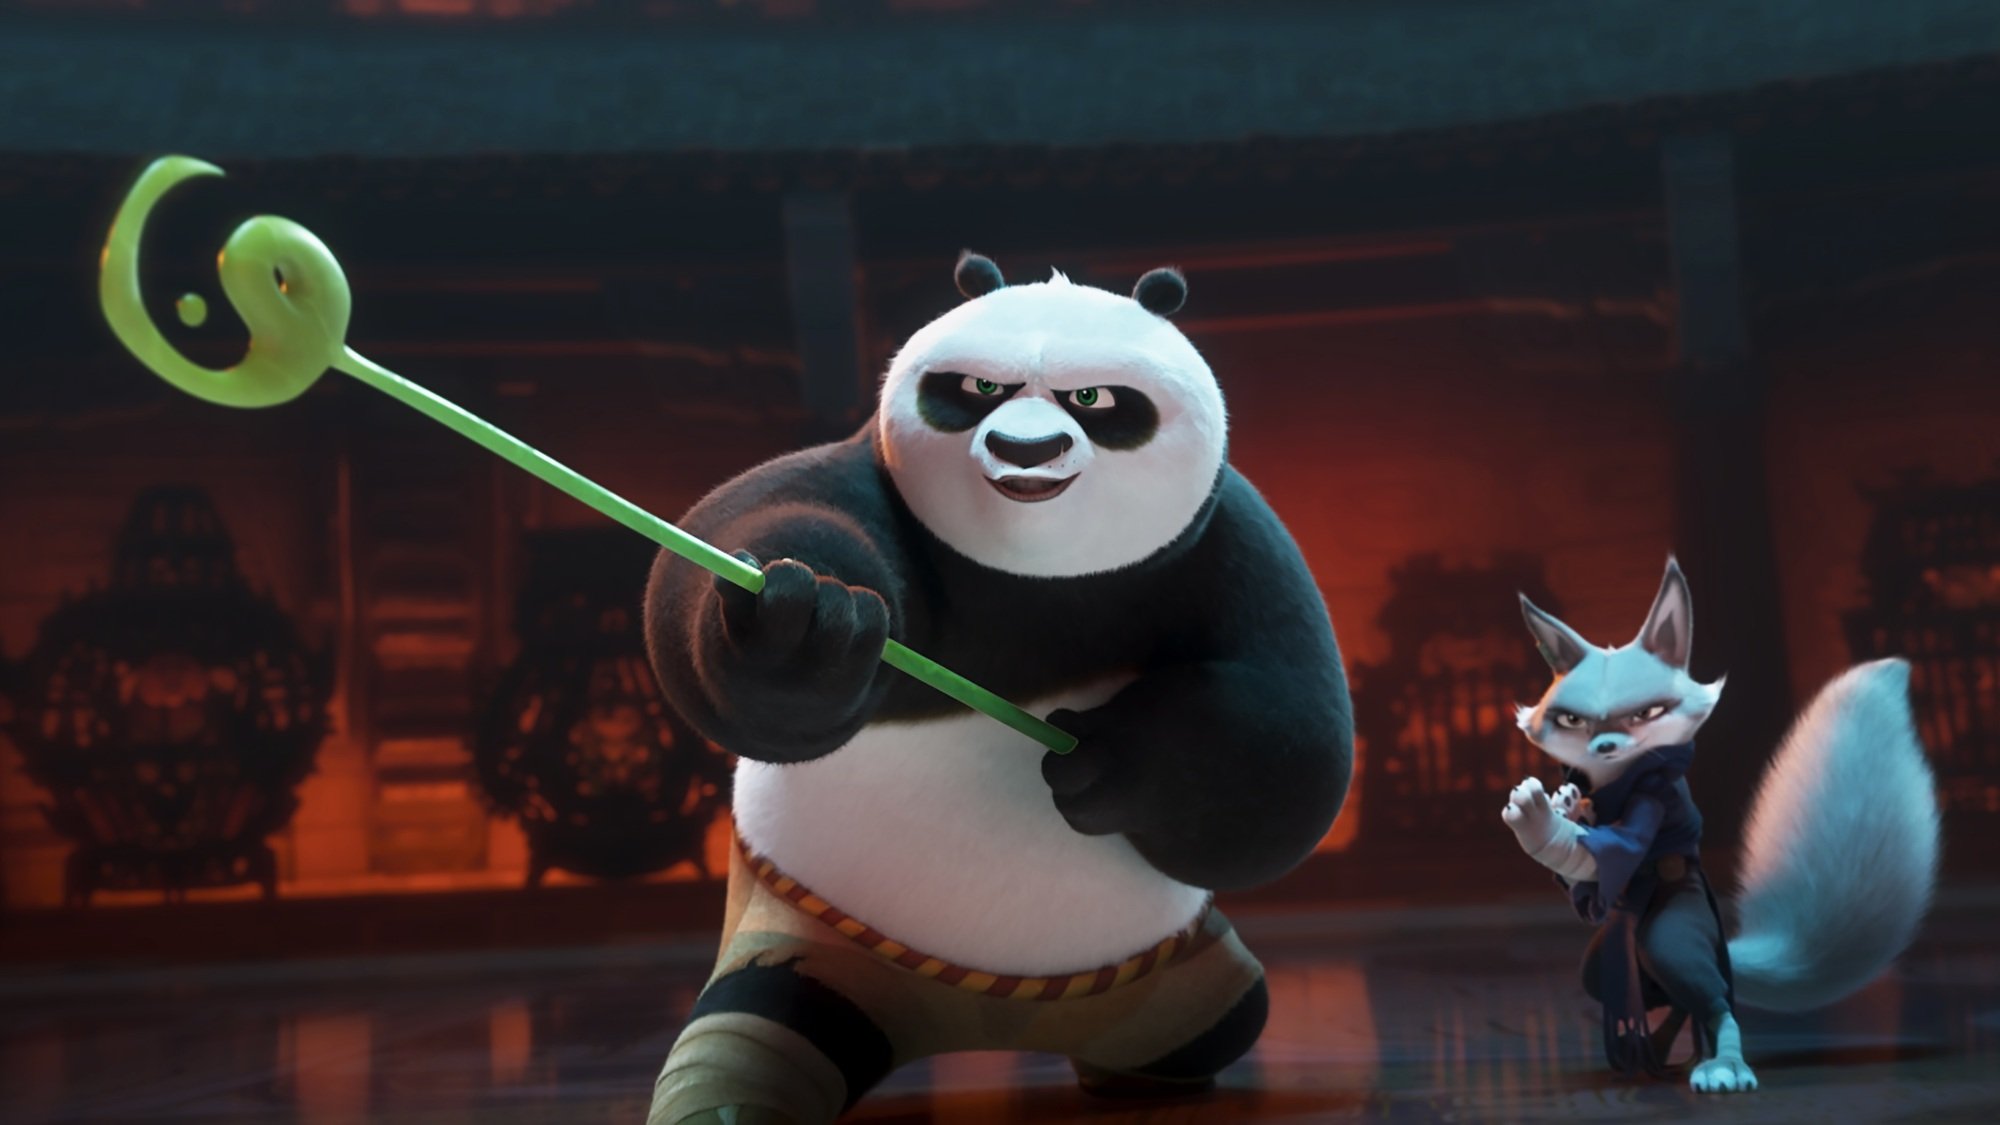 Un panda brandissant un bâton vert et un renard se préparent à se battre.